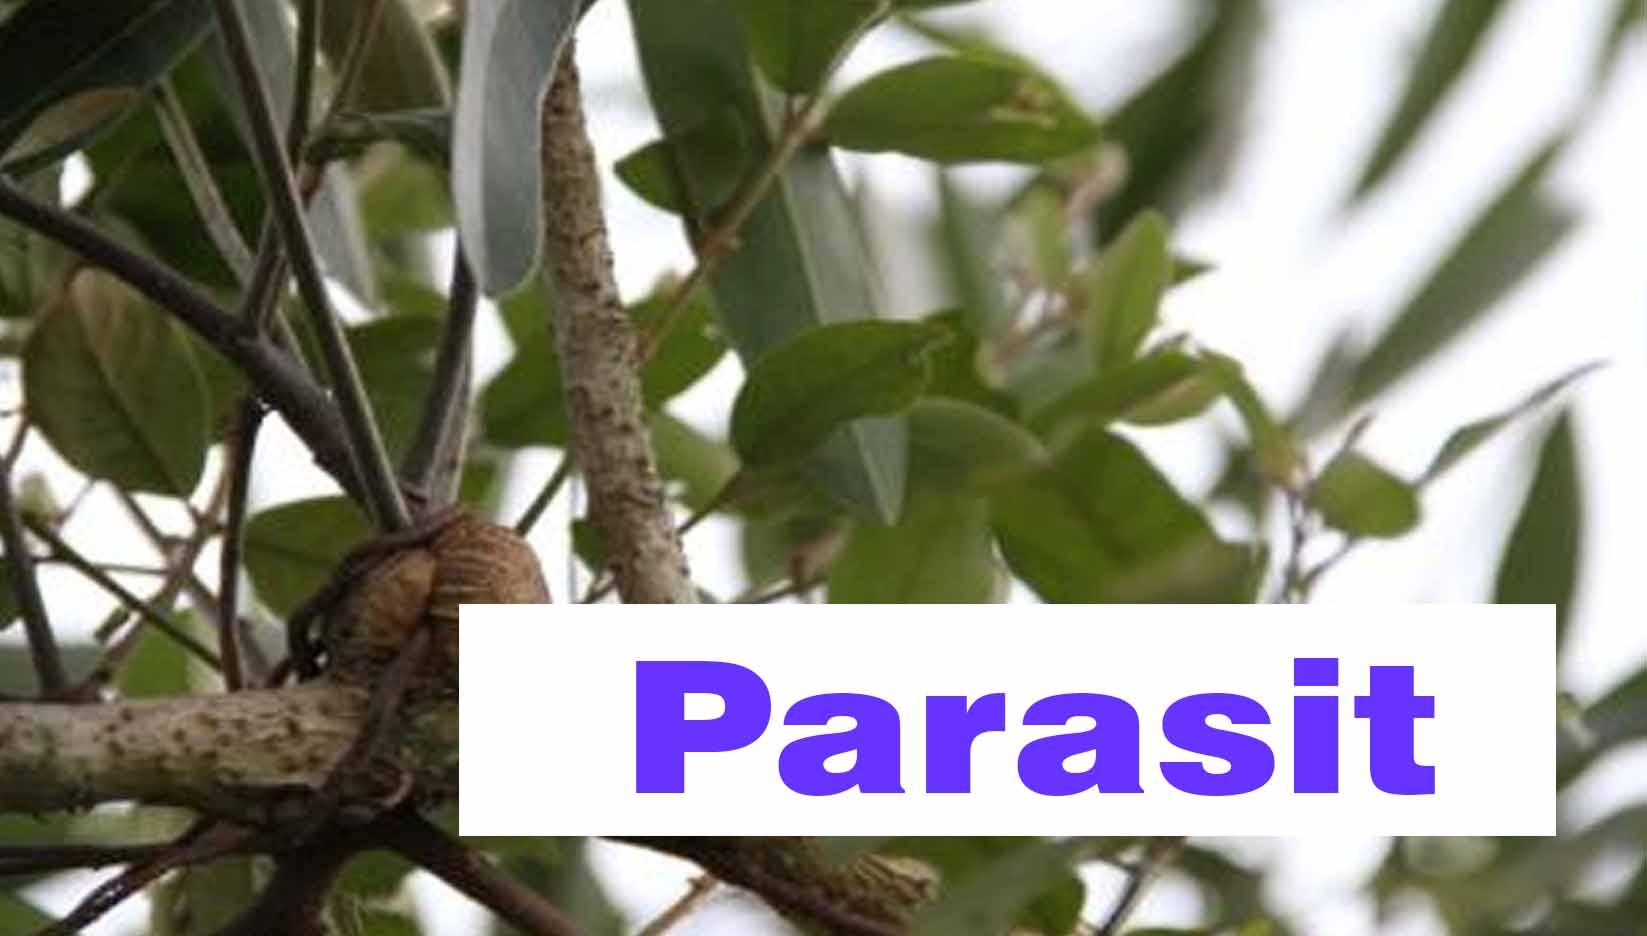 erdei parazita miért rossz a lehelet